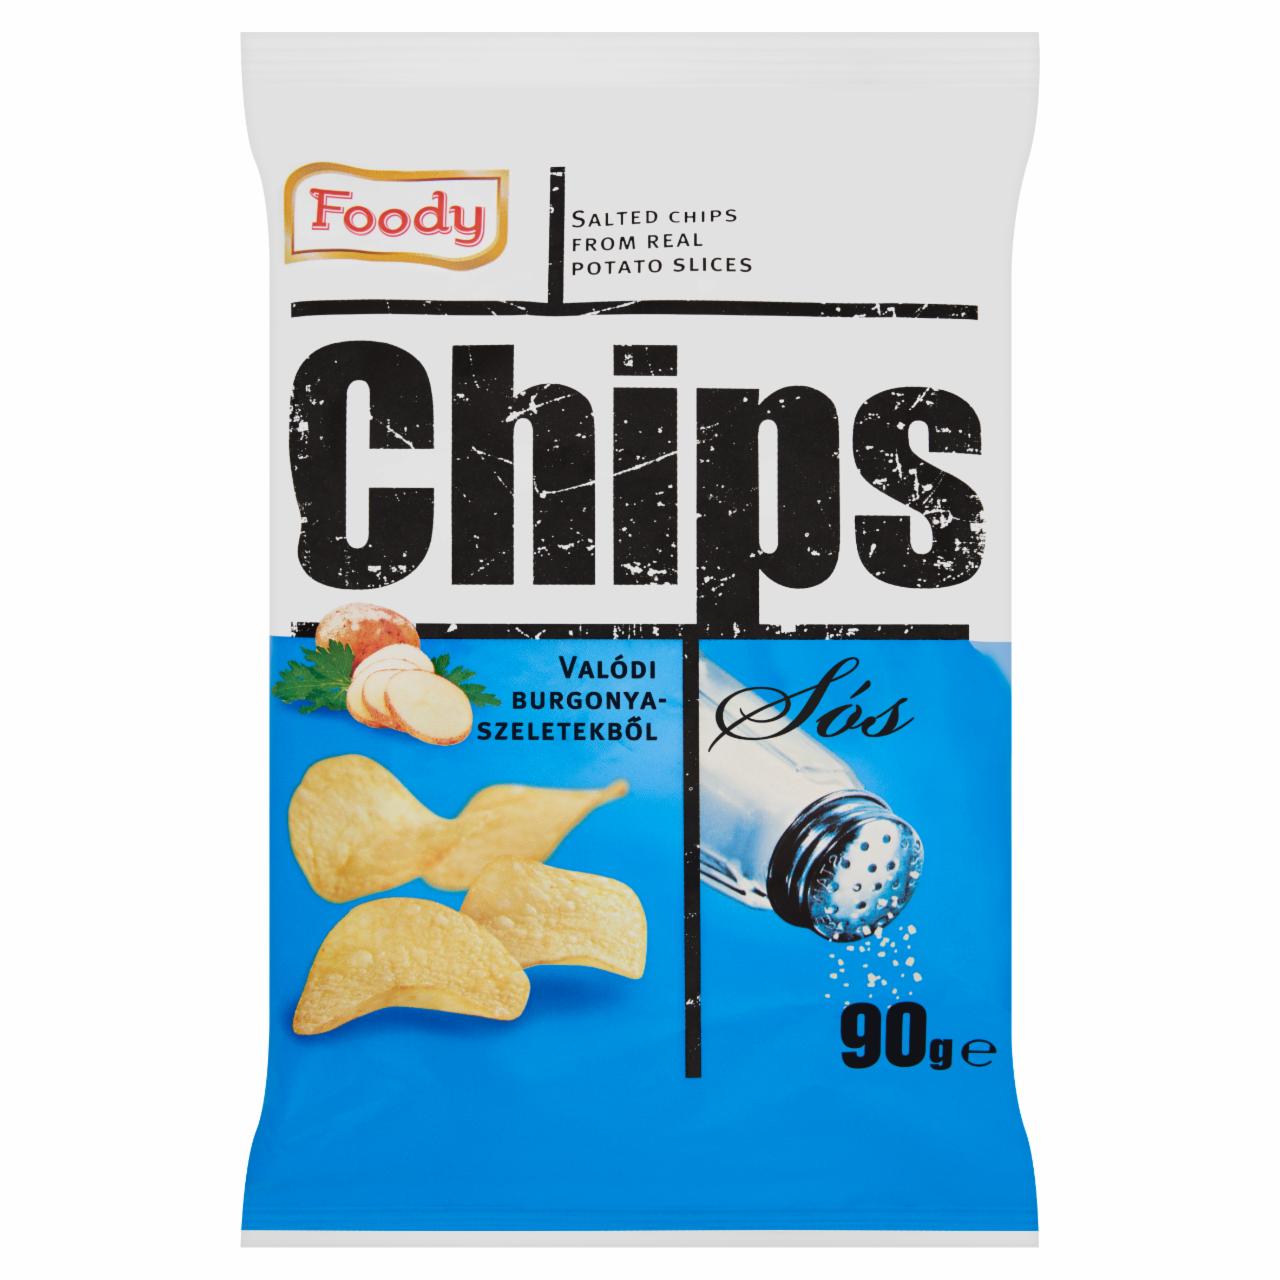 Képek - Foody sós chips valódi burgonyaszeletekből 90 g